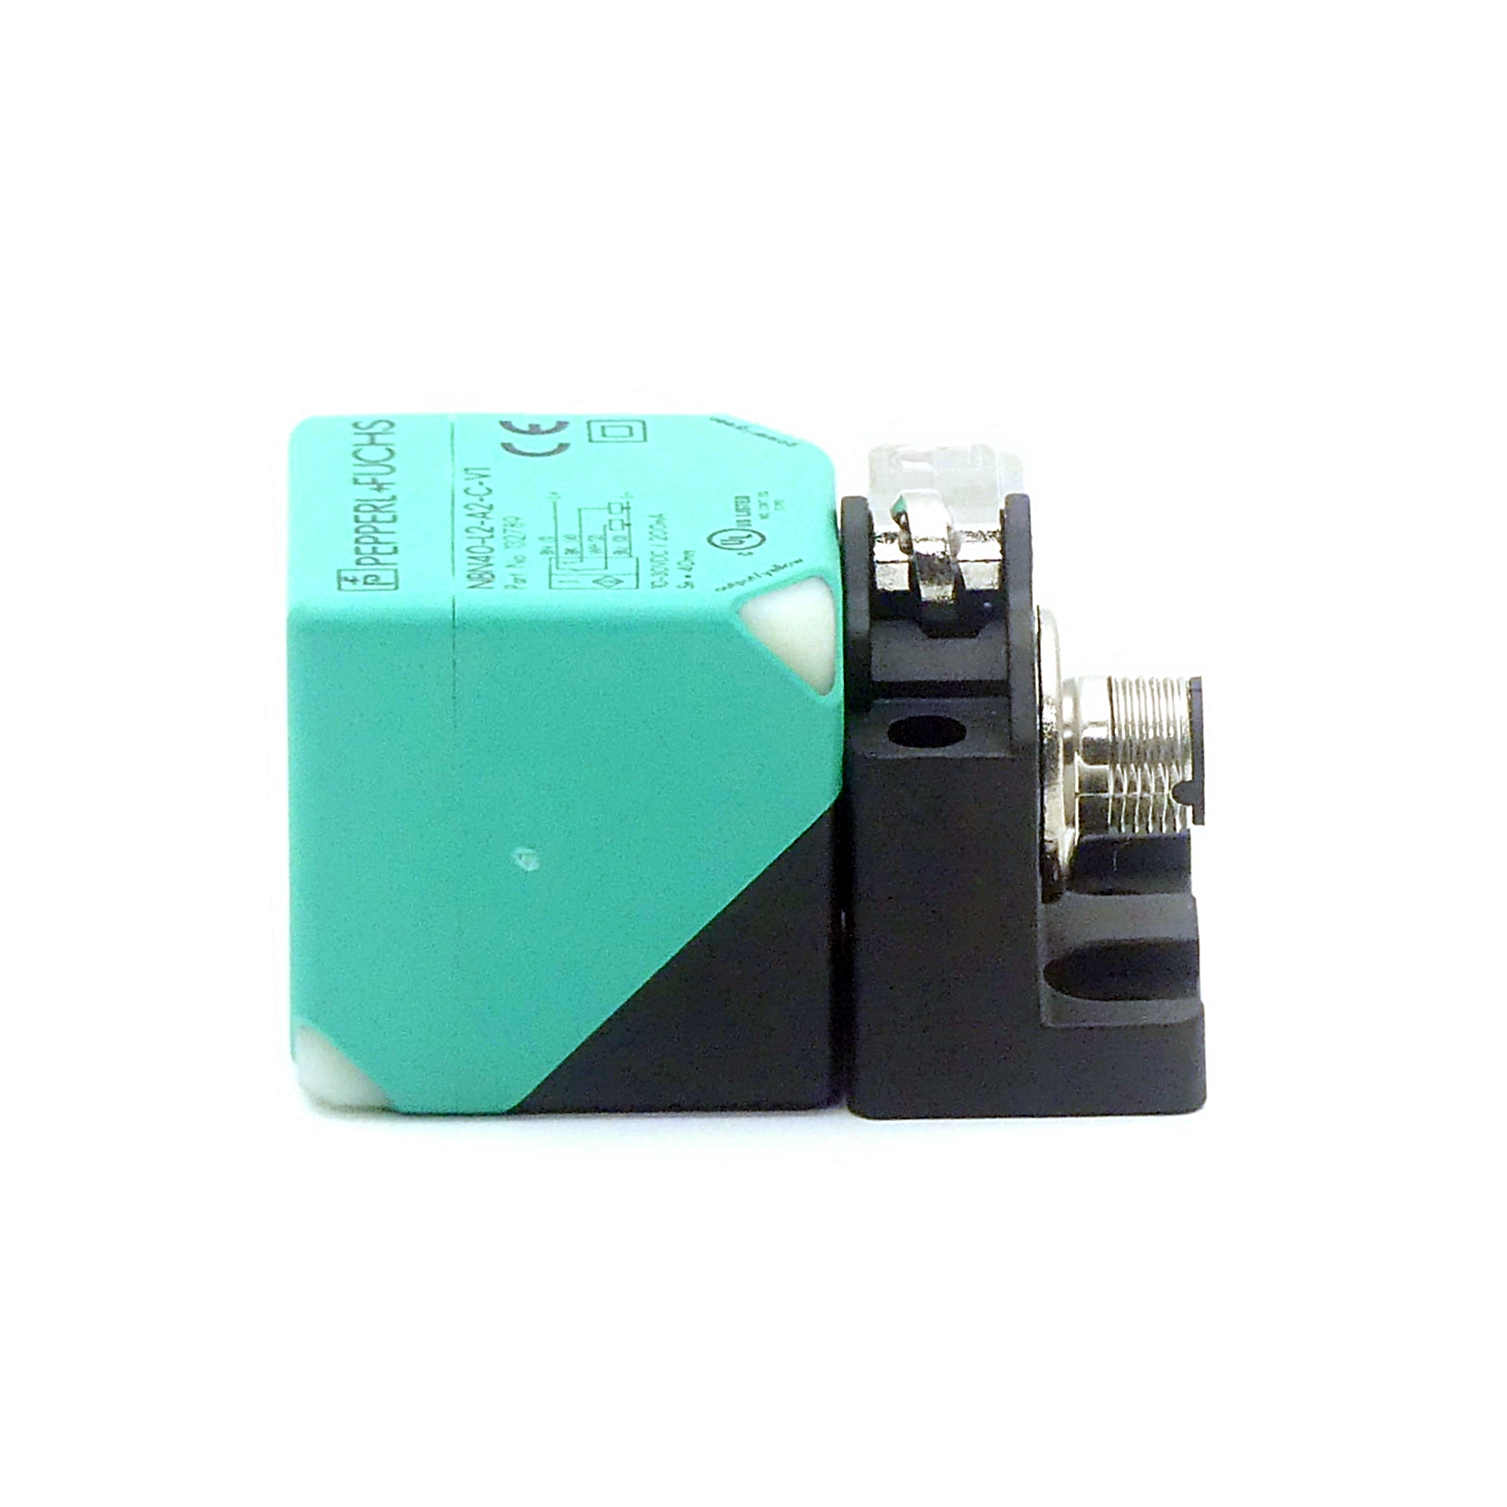 Inductive sensor NBN40-L2-A2-C-V1 